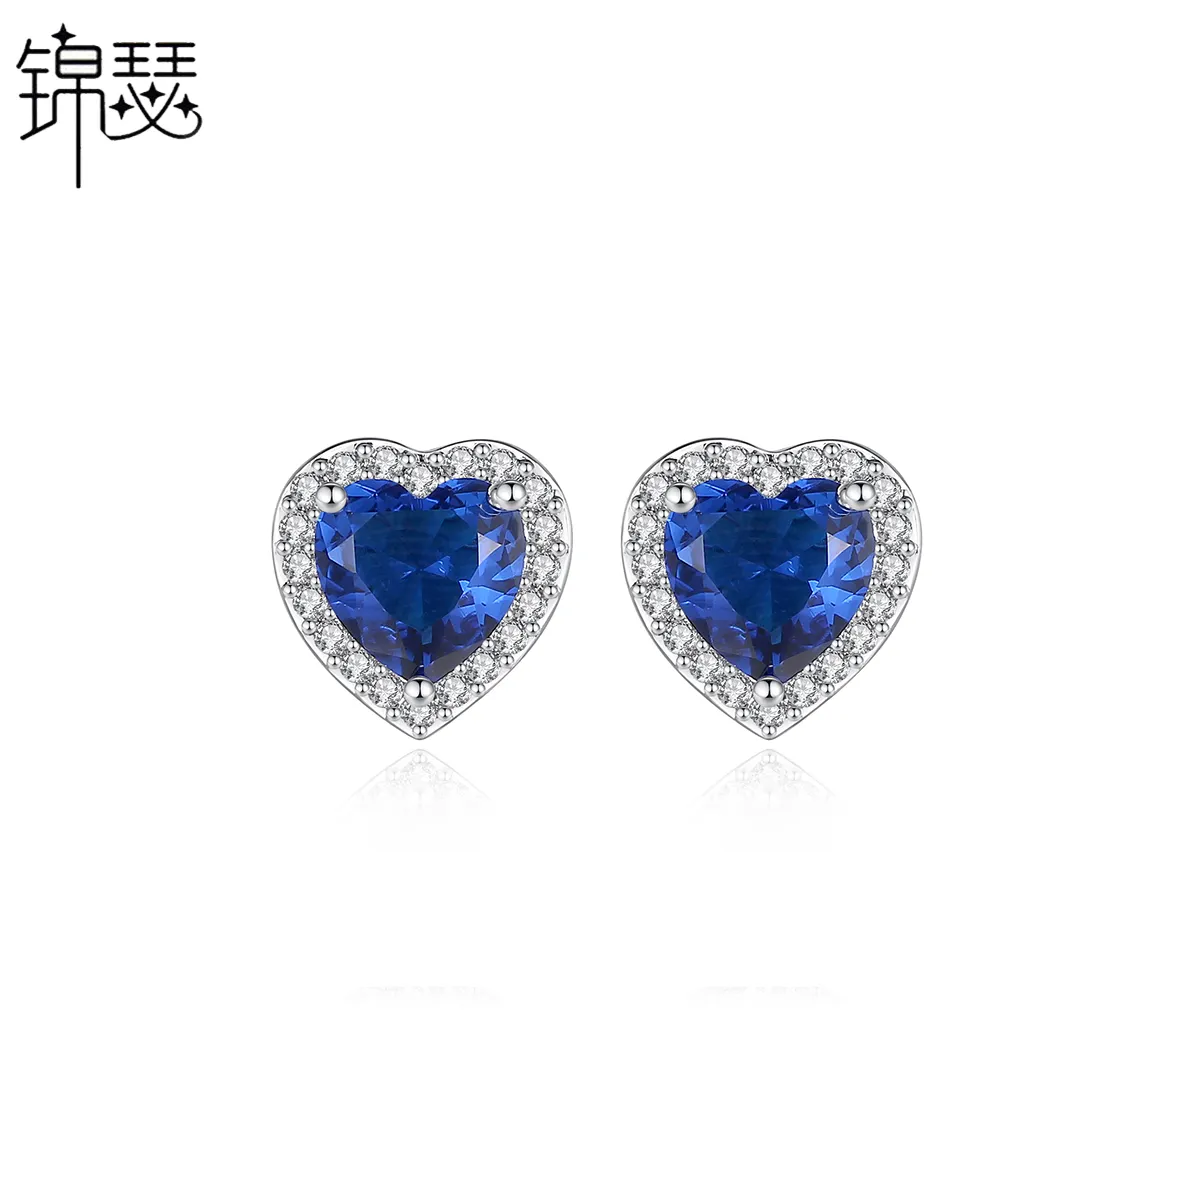 LUOTEEMI Wholesale Stock CZ Jewelry Factory JINSE Brand Small Size Sweet Cut Heart Shape Women Stud Earring